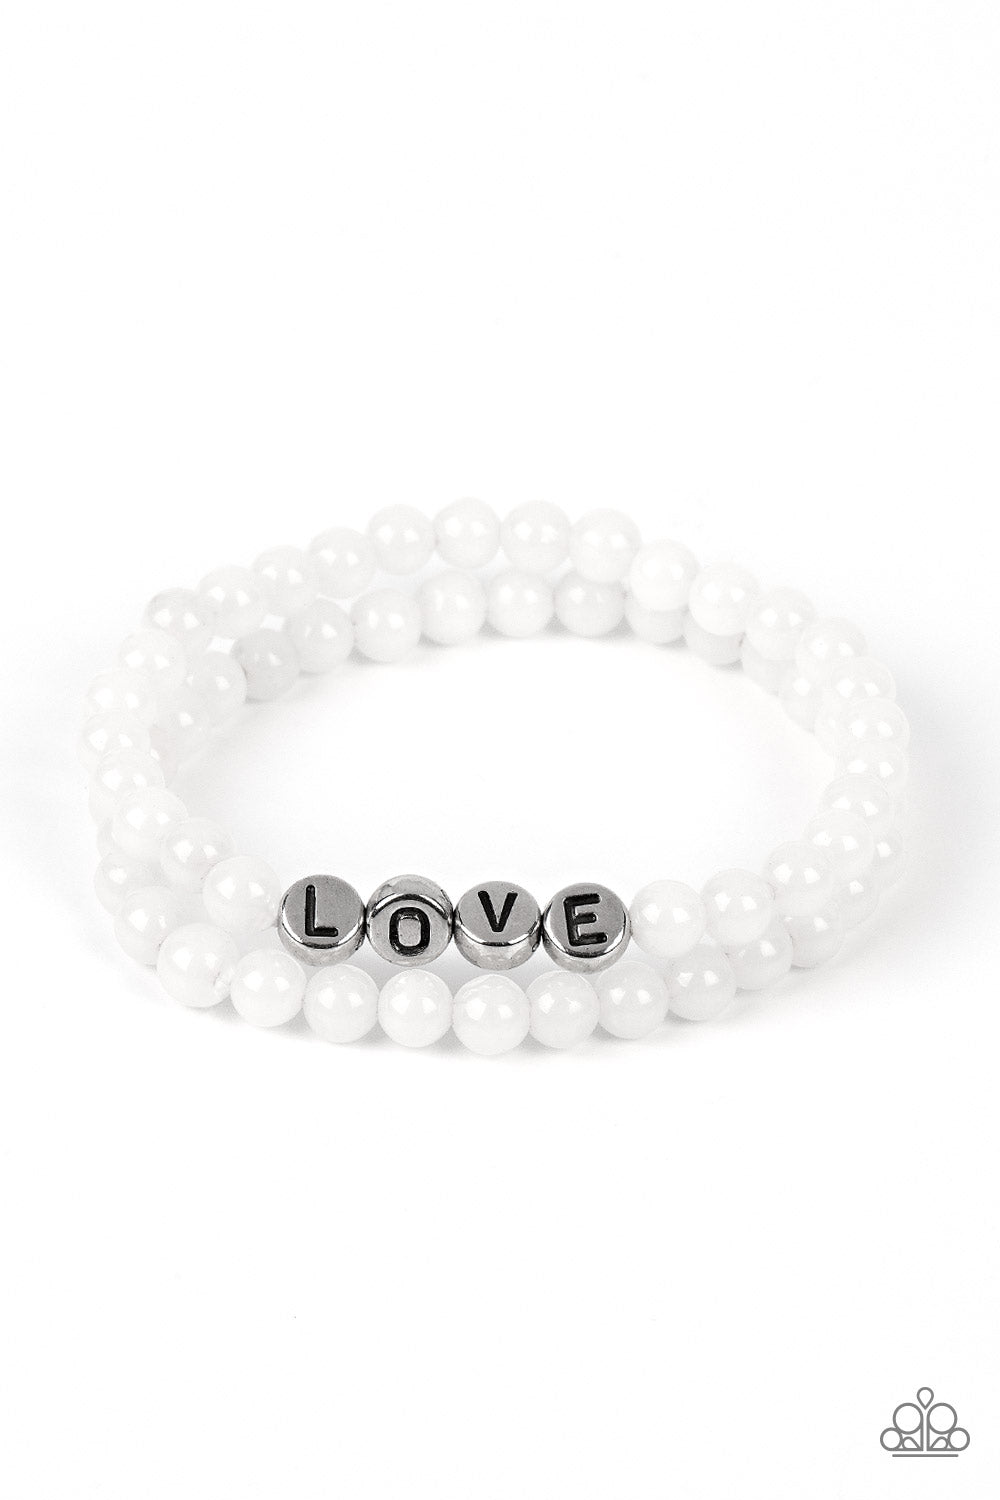 Devoted Dreamer - White (LOVE) Bracelet